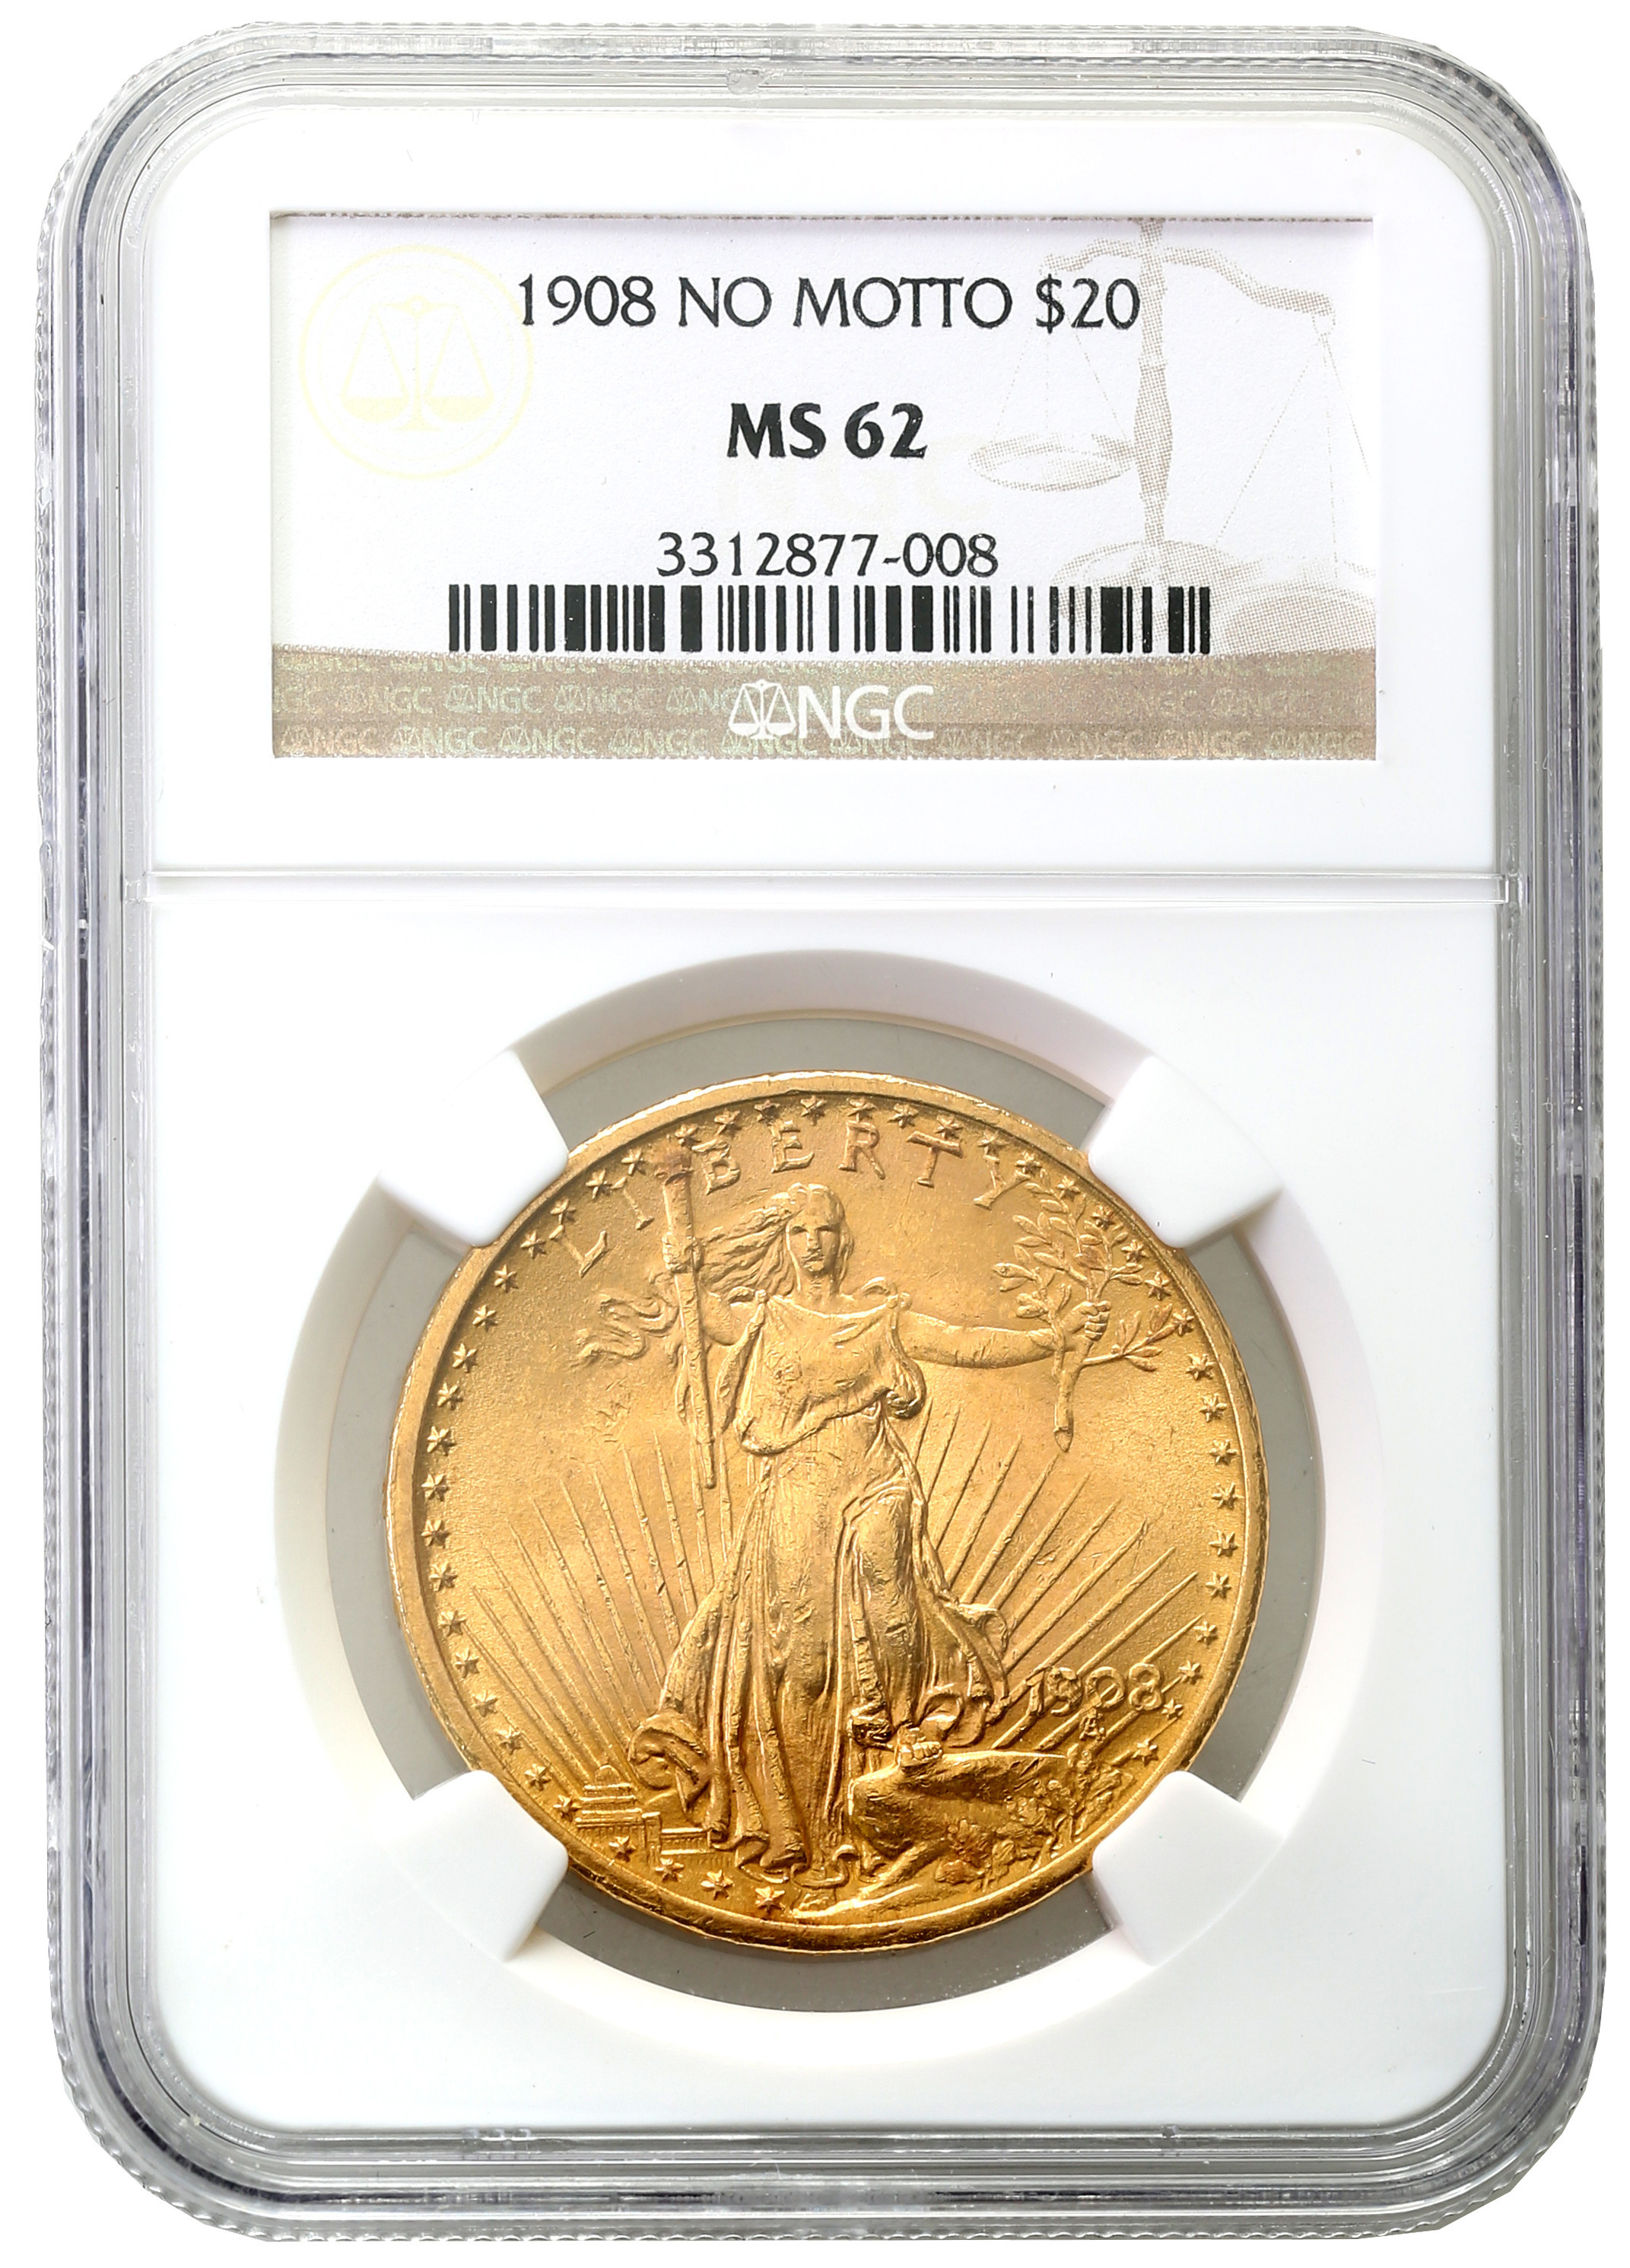 USA. 20 dolarów Saint Gaudens 1908 no motto NGC MS62